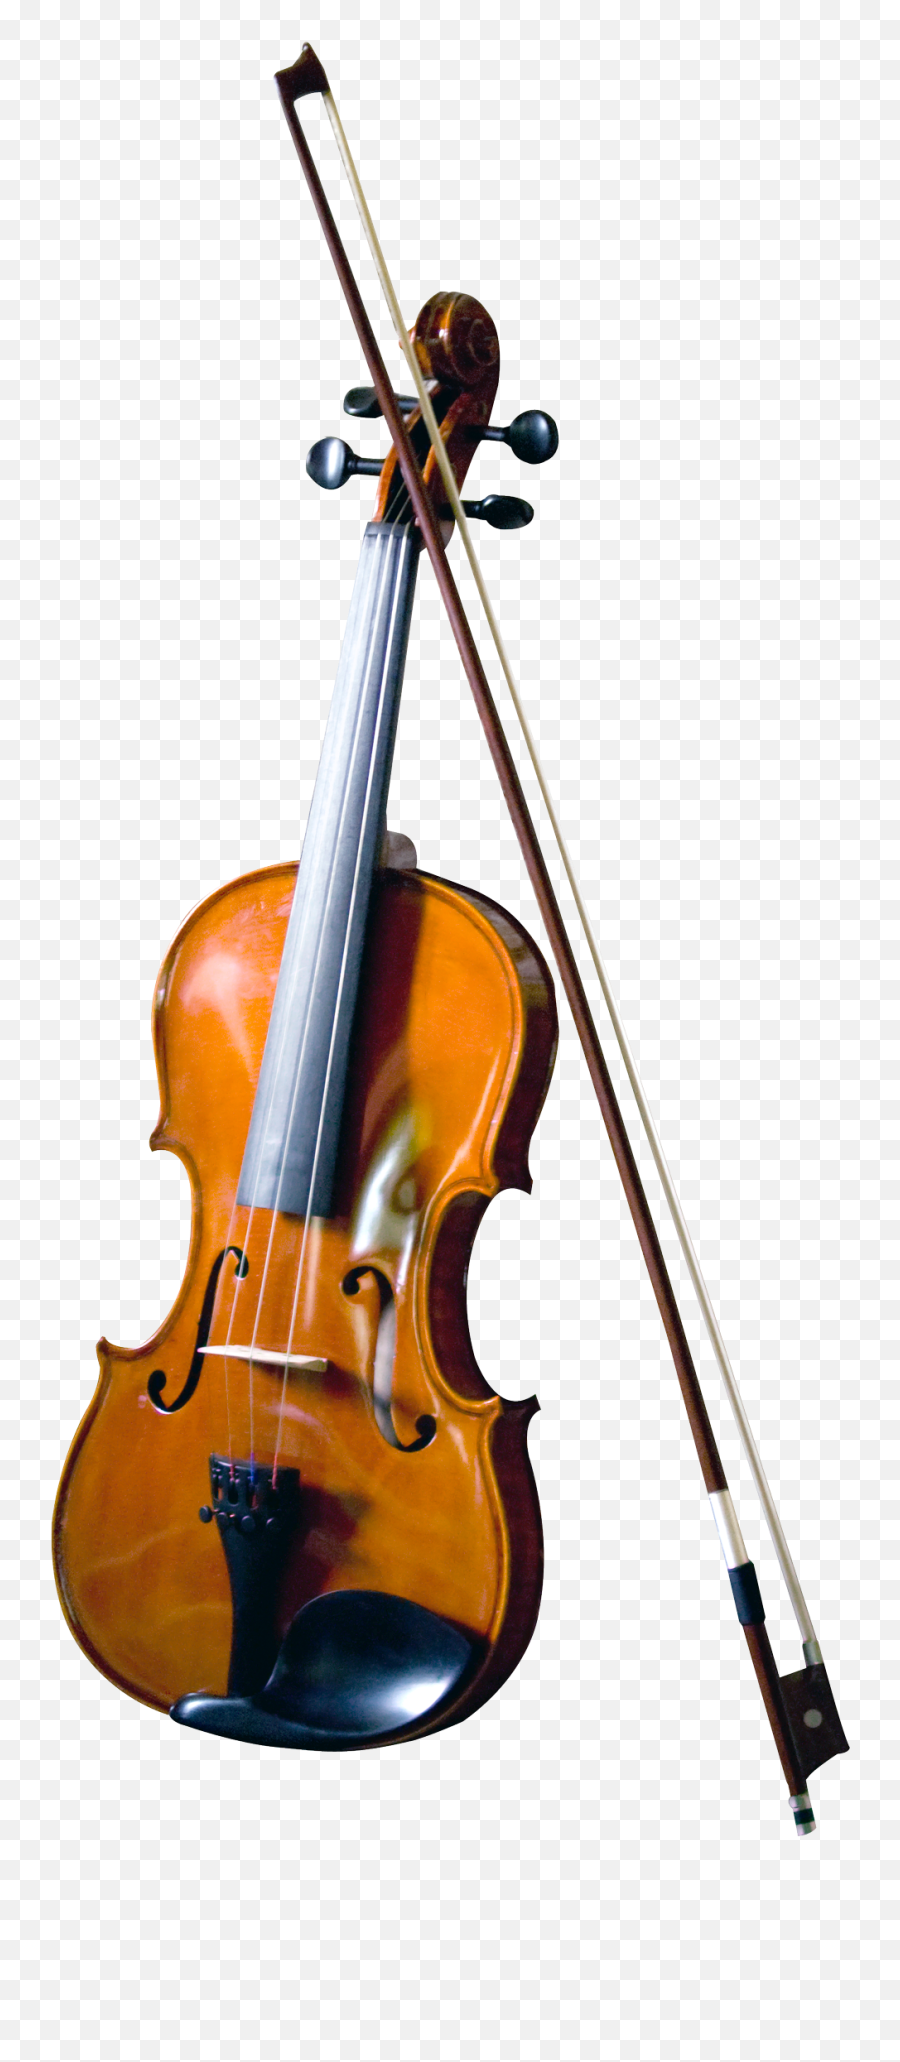 Violin Png Image Transparent Background - High Resolution Violin Png Emoji,Violin Png